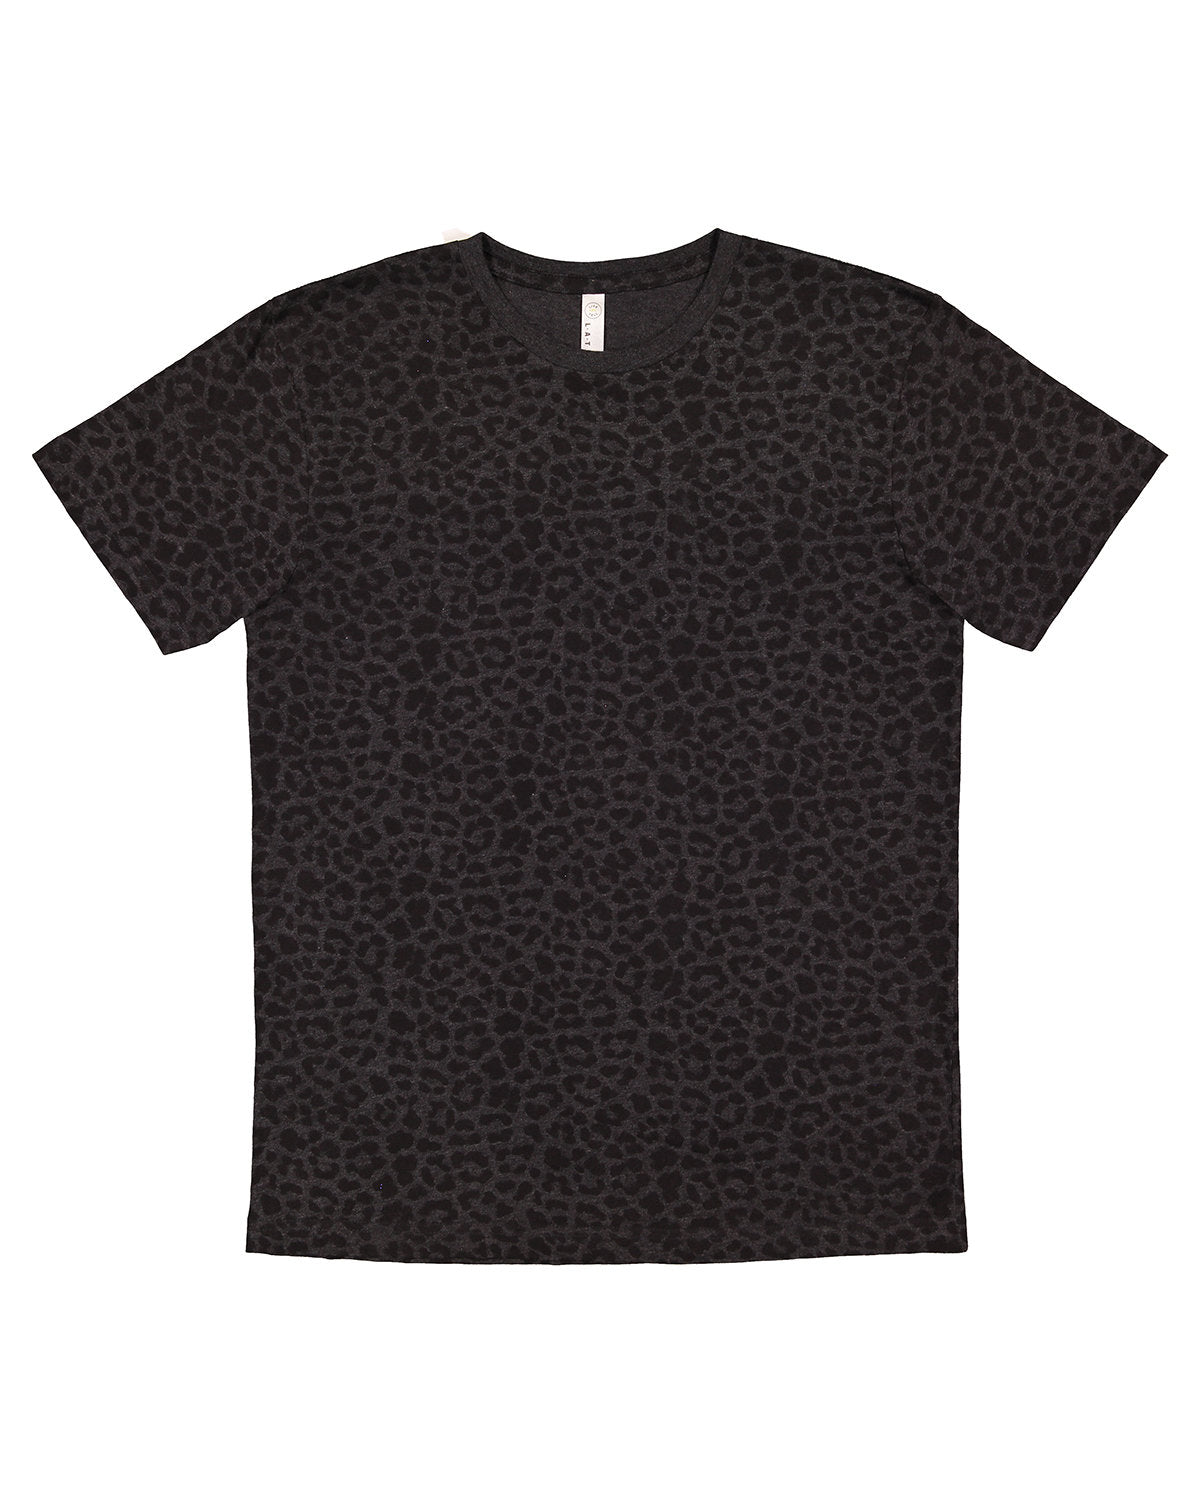 LAT Apparel T-Shirt Black Leopard